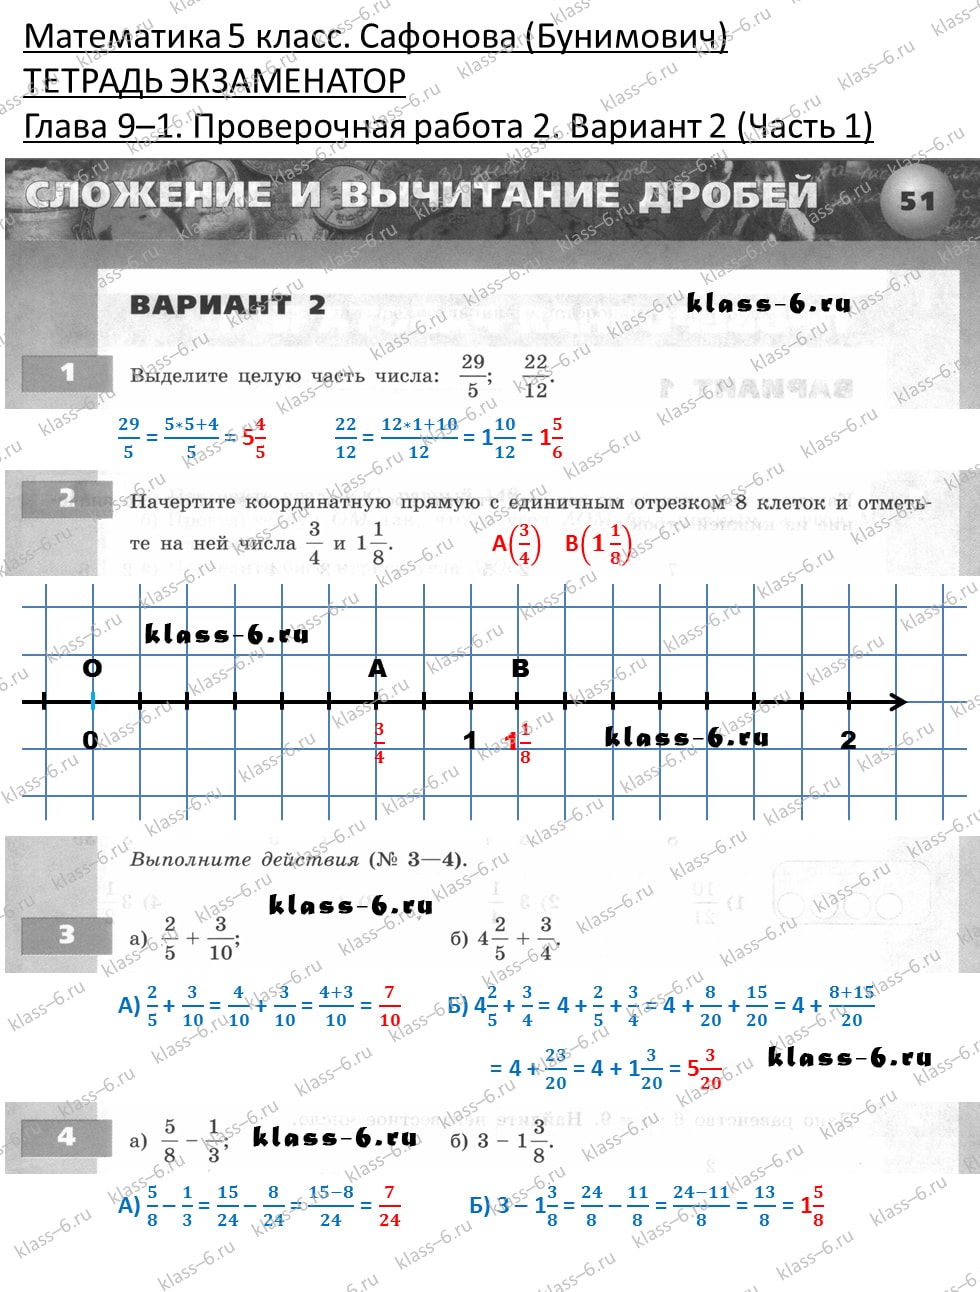 решебник и гдз по математике тетрадь экзаменатор Сафонова, Бунимович 5 класс глава 9 (1) контрольная работа 2 вариант 2 (1)